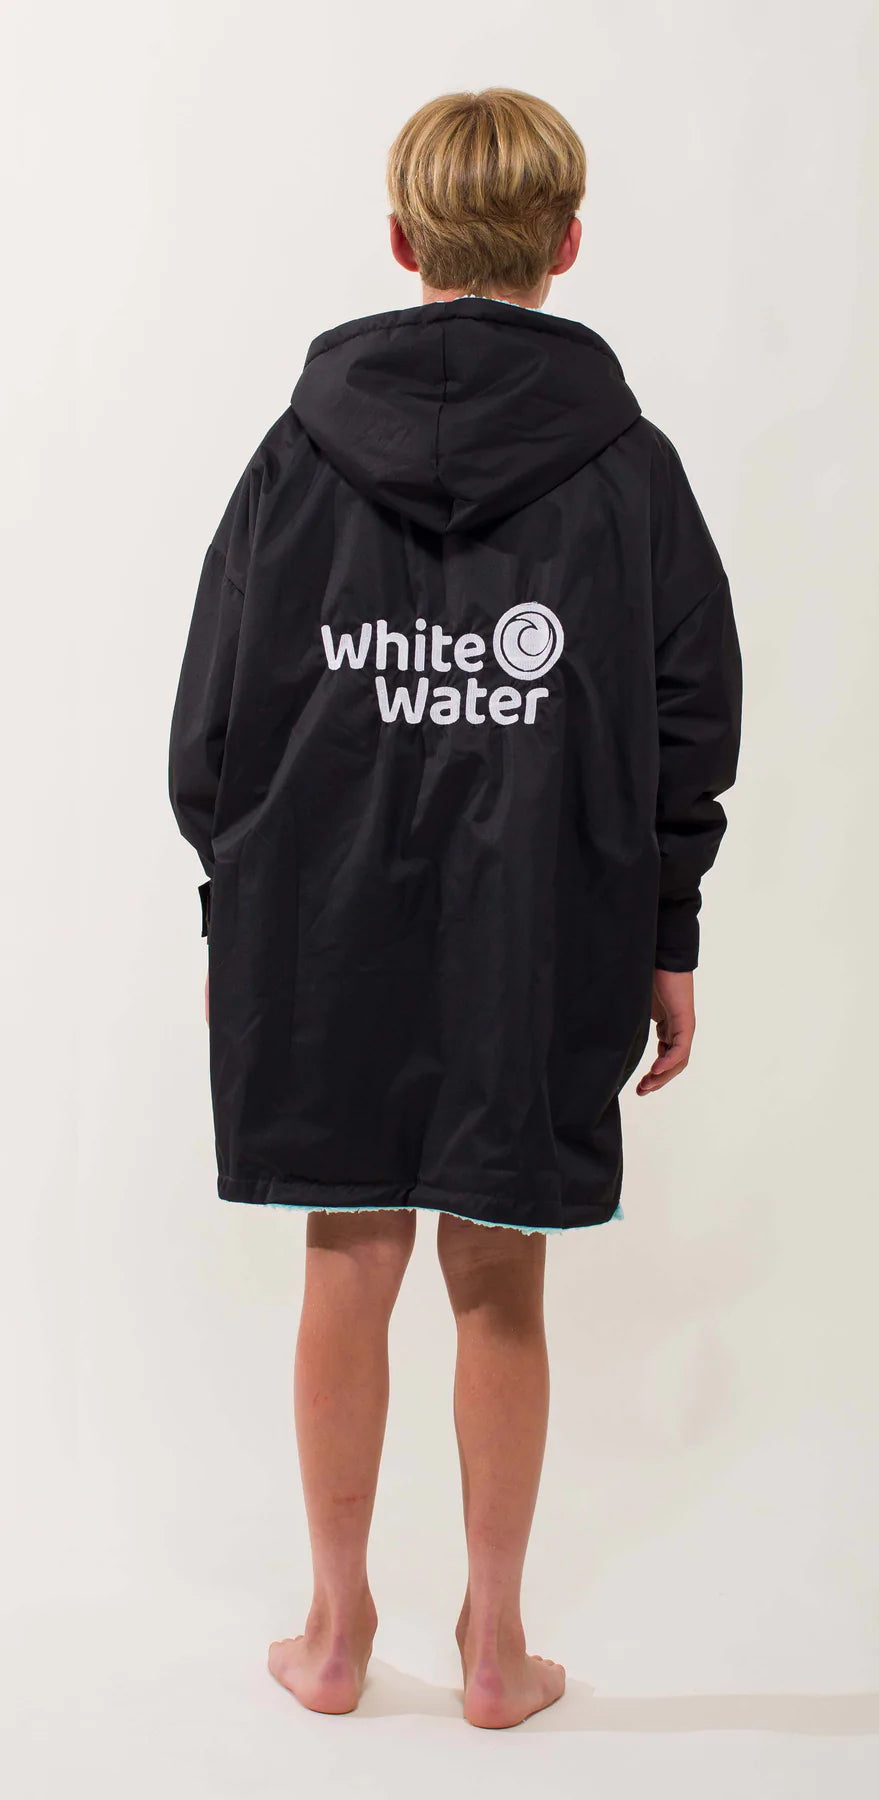 White Water Pro Kids -  schwarz -  Lammwolle Synthetik - Innenfutter hellblau